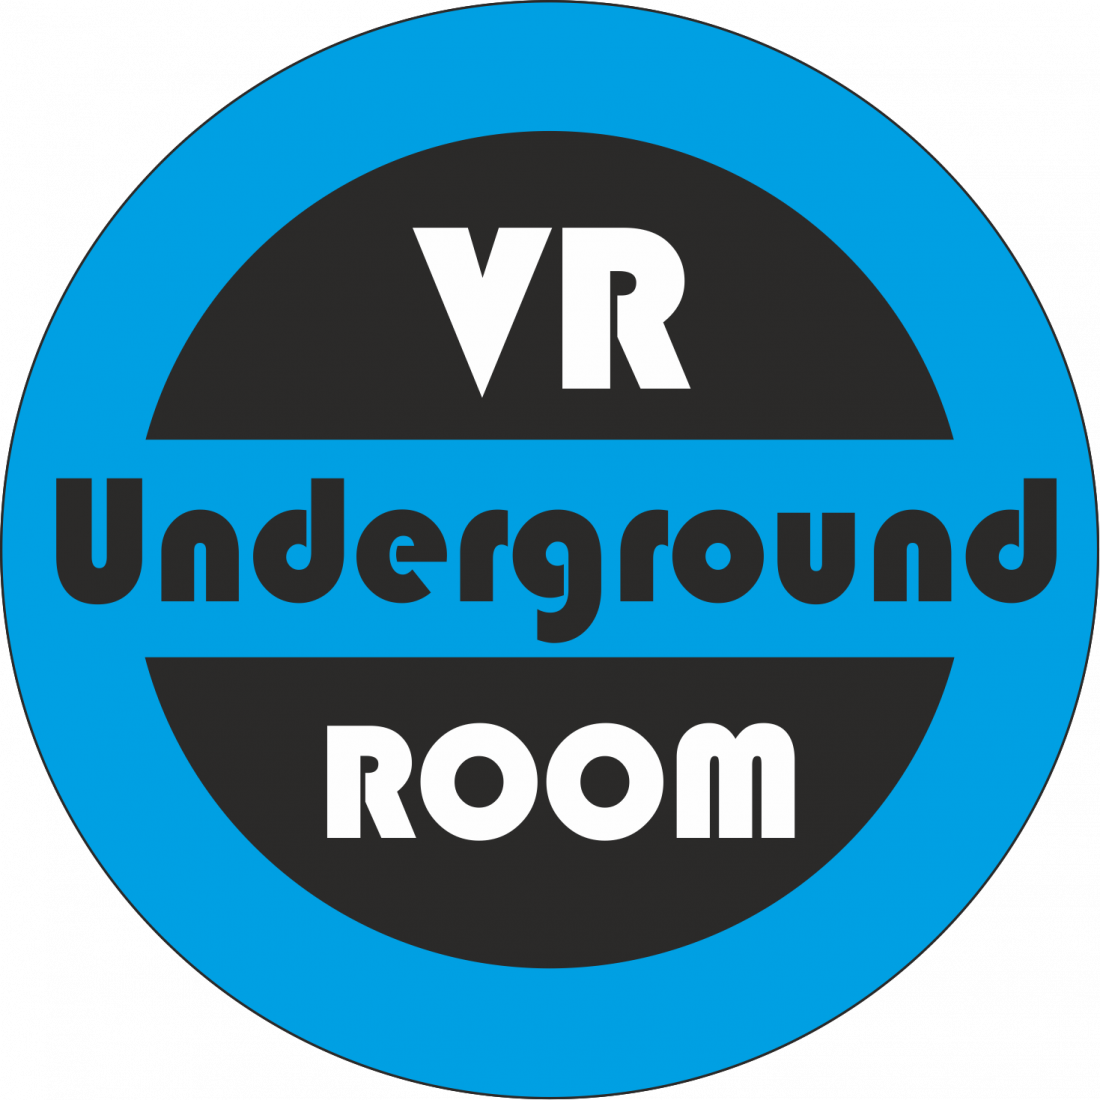 Сеанс виртуальной реальности и квесты в шлемах "HTC Vive", игры "PlayStation 4 Pro" от 5 руб/до 60 мин в "VR Room Underground"